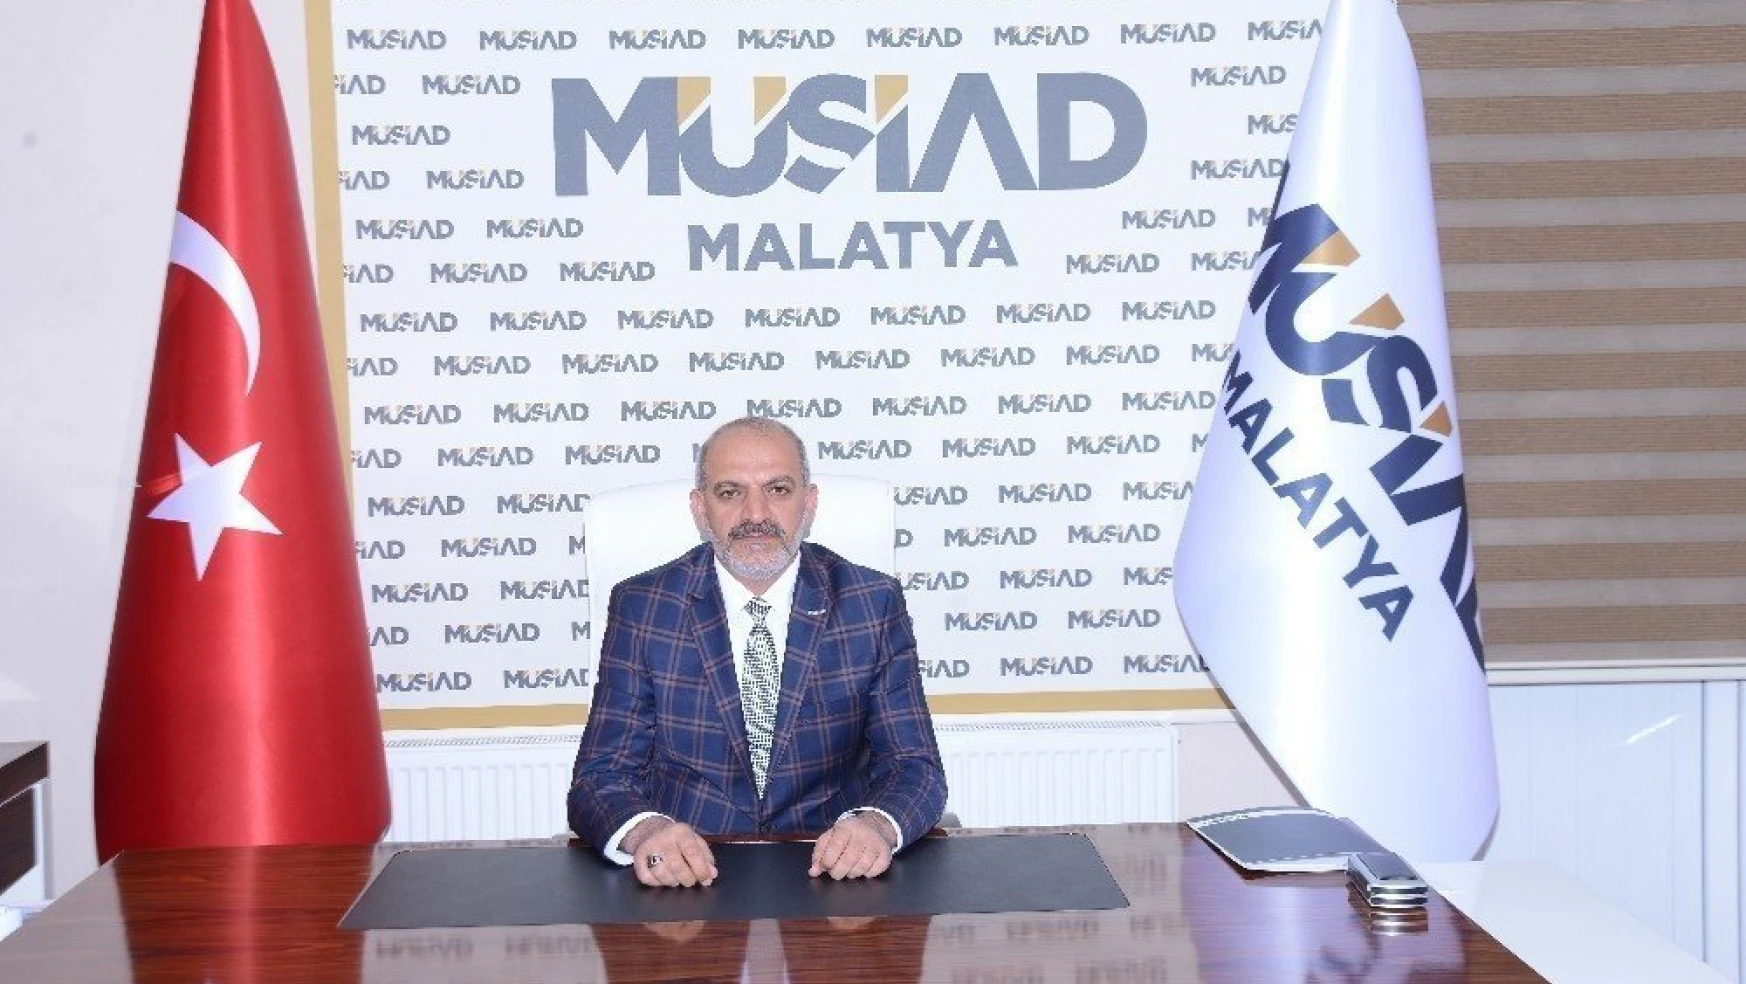 Malatya Müsaid'dan 28 Şubat açıklaması
